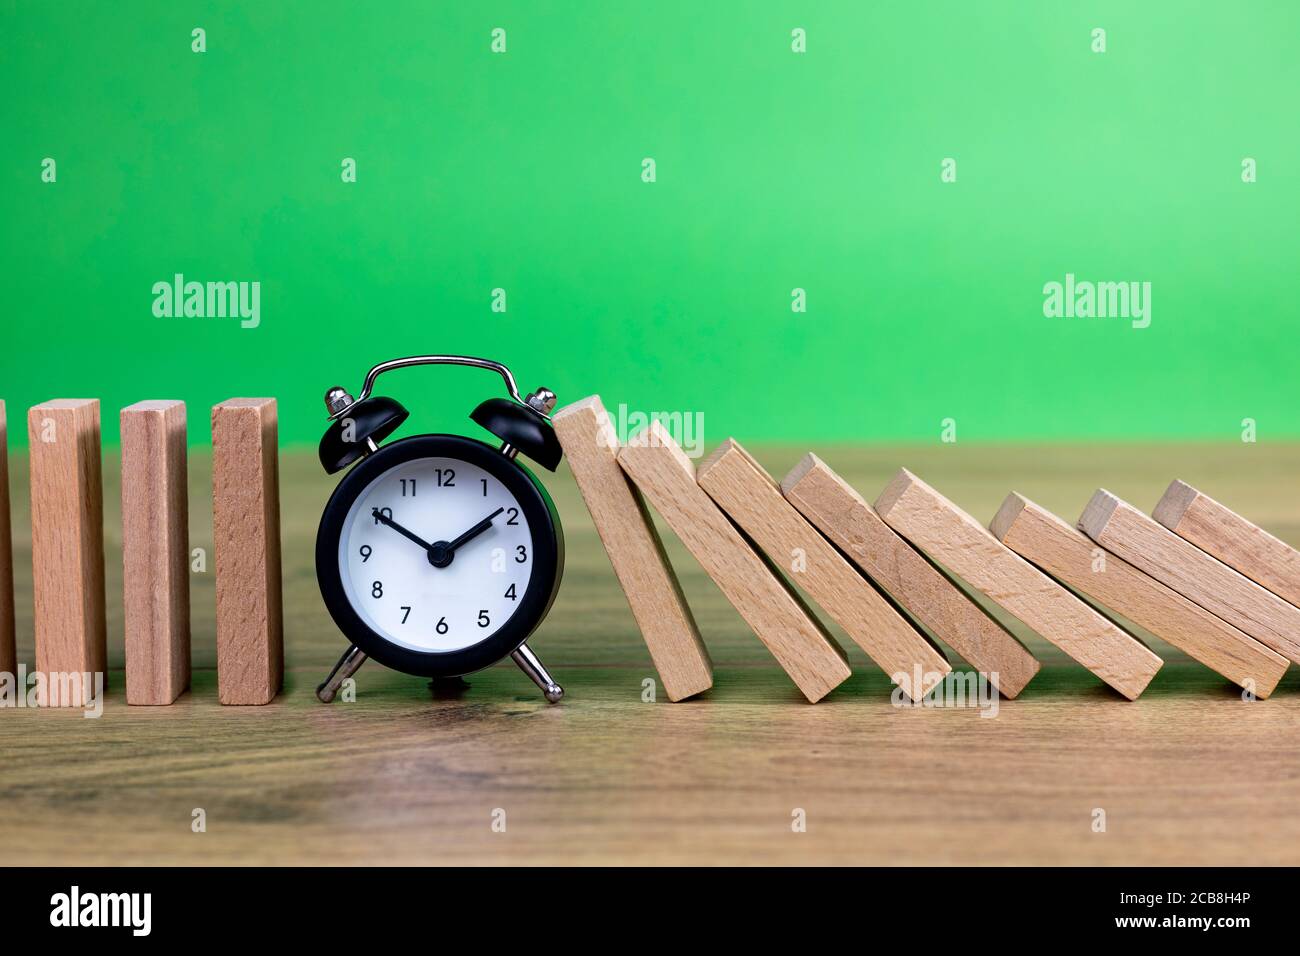 effet domino concept avec tuiles en bois bloquées par horloge avec arrière-plan vert Banque D'Images